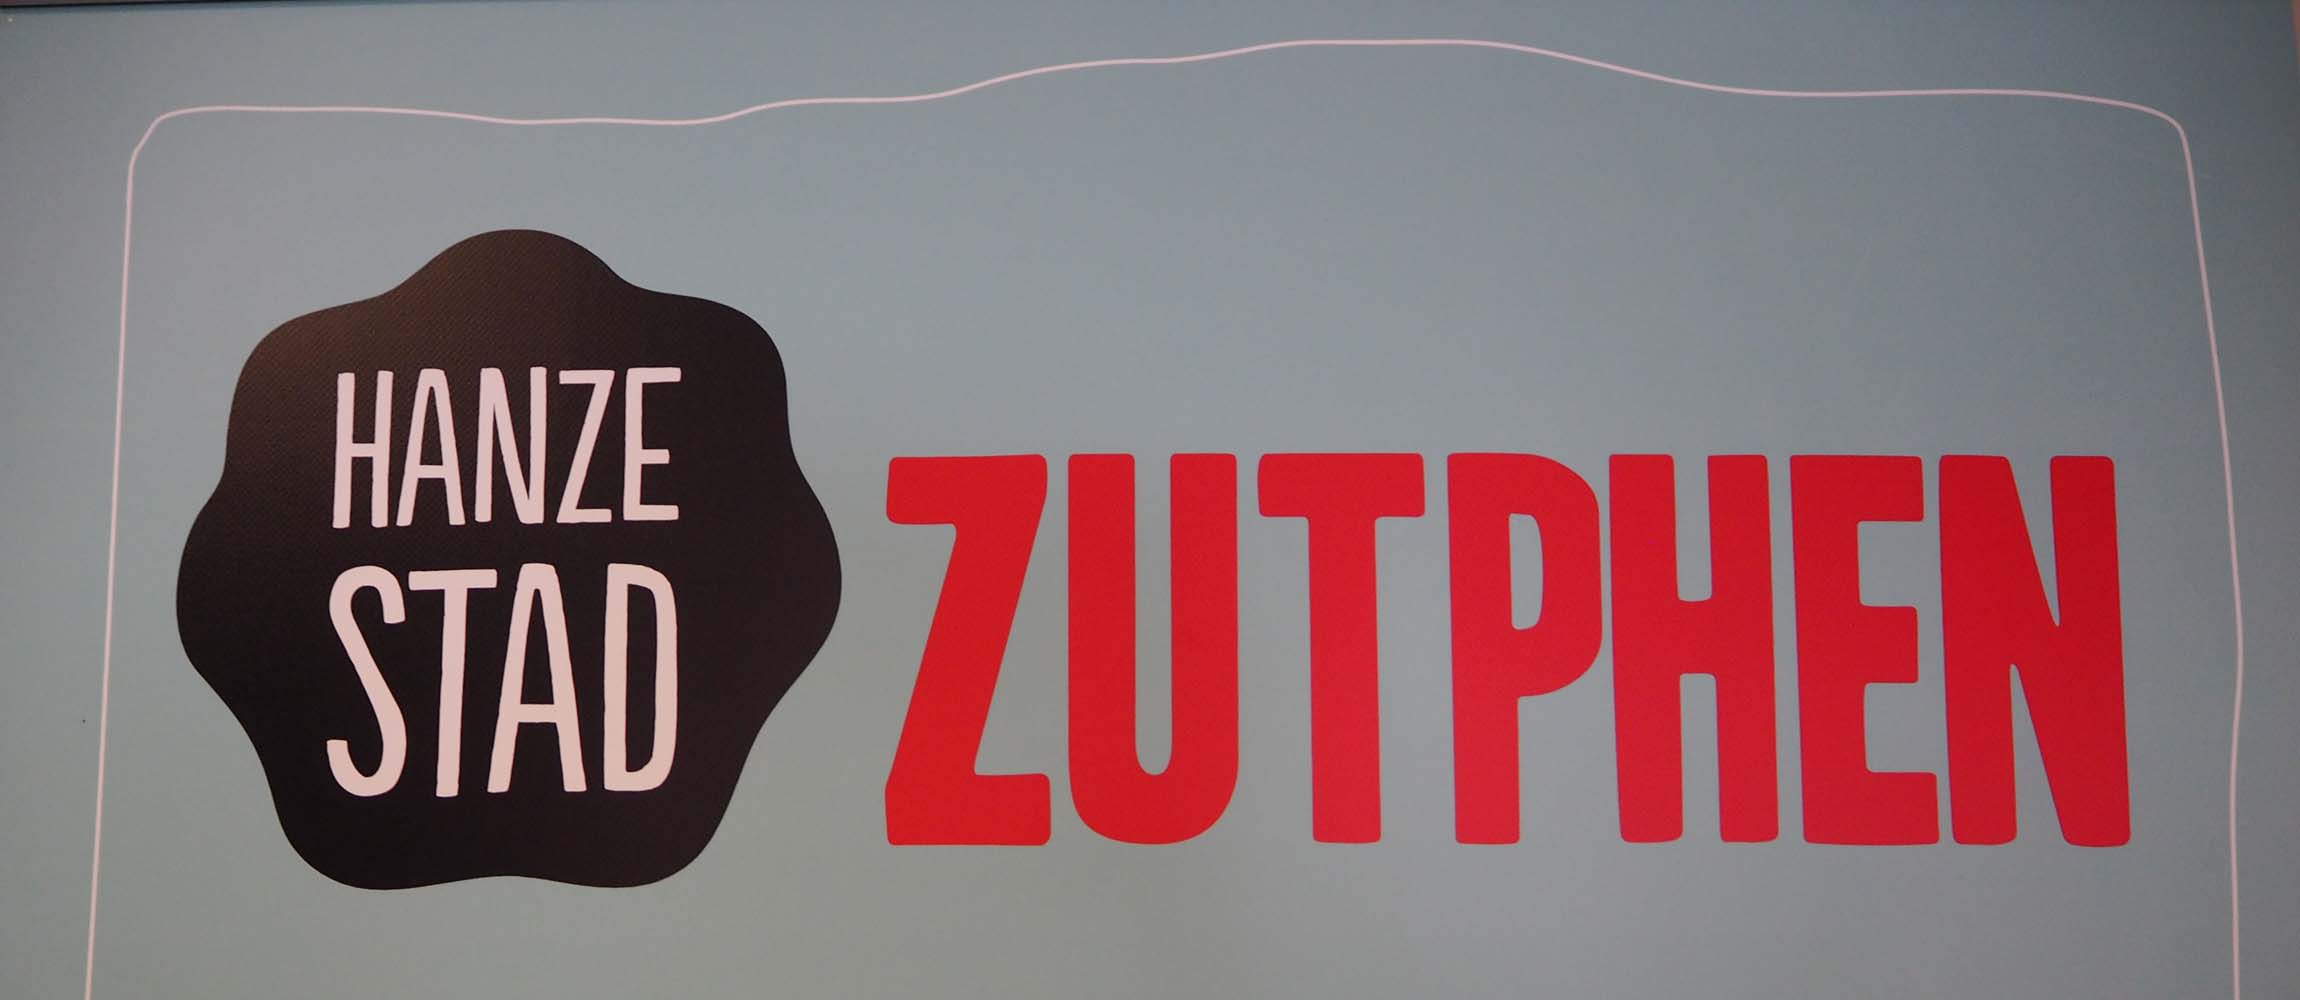 Hanzestad Zutphen logo